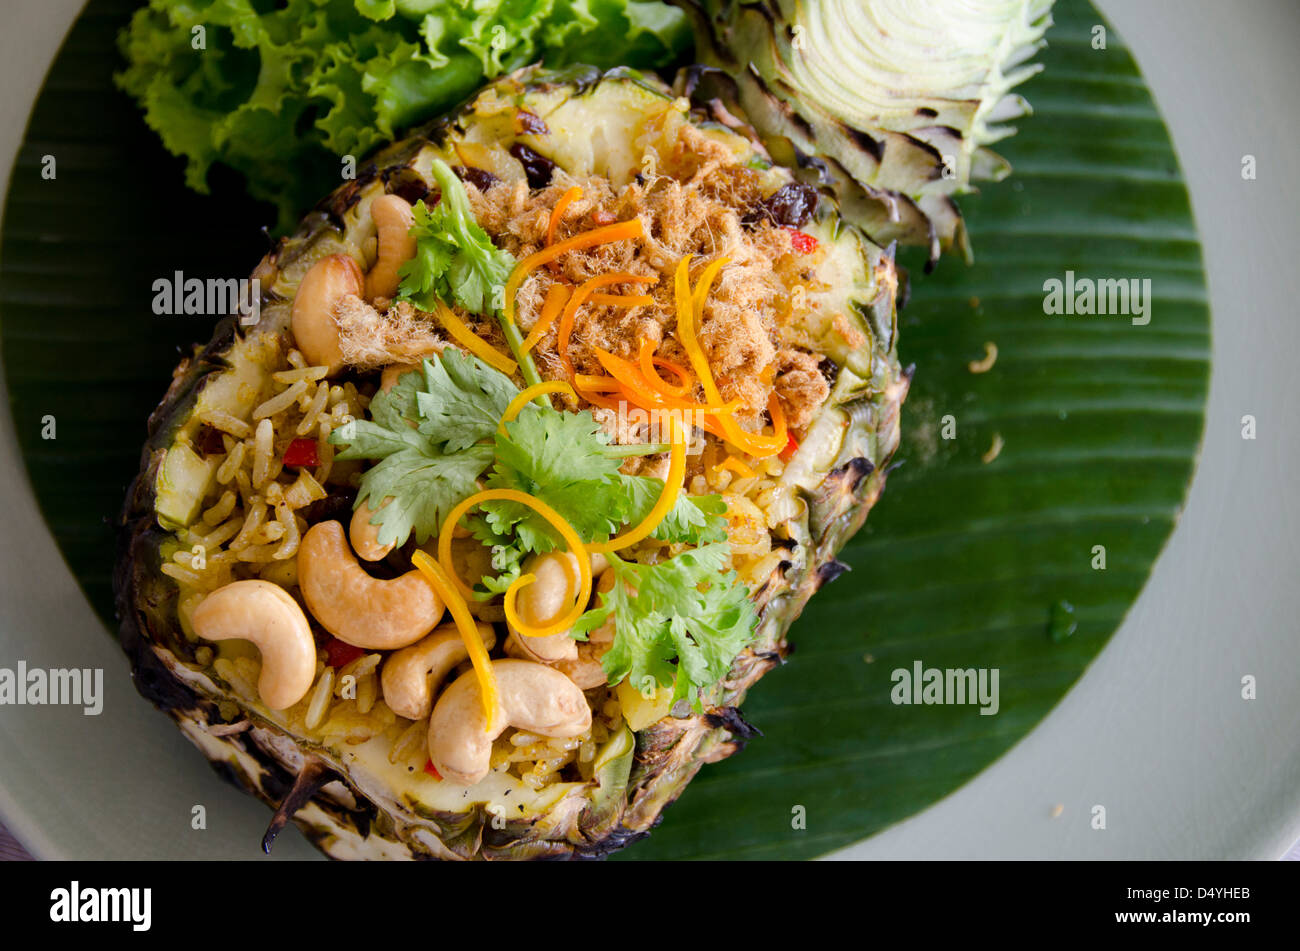 Thailand, Bangkok. Typisch thailändisches Essen, Curry Reis mit Ananas, Garnelen, Cashew-Nüssen, Ingwer und Kokosnuss. Stockfoto